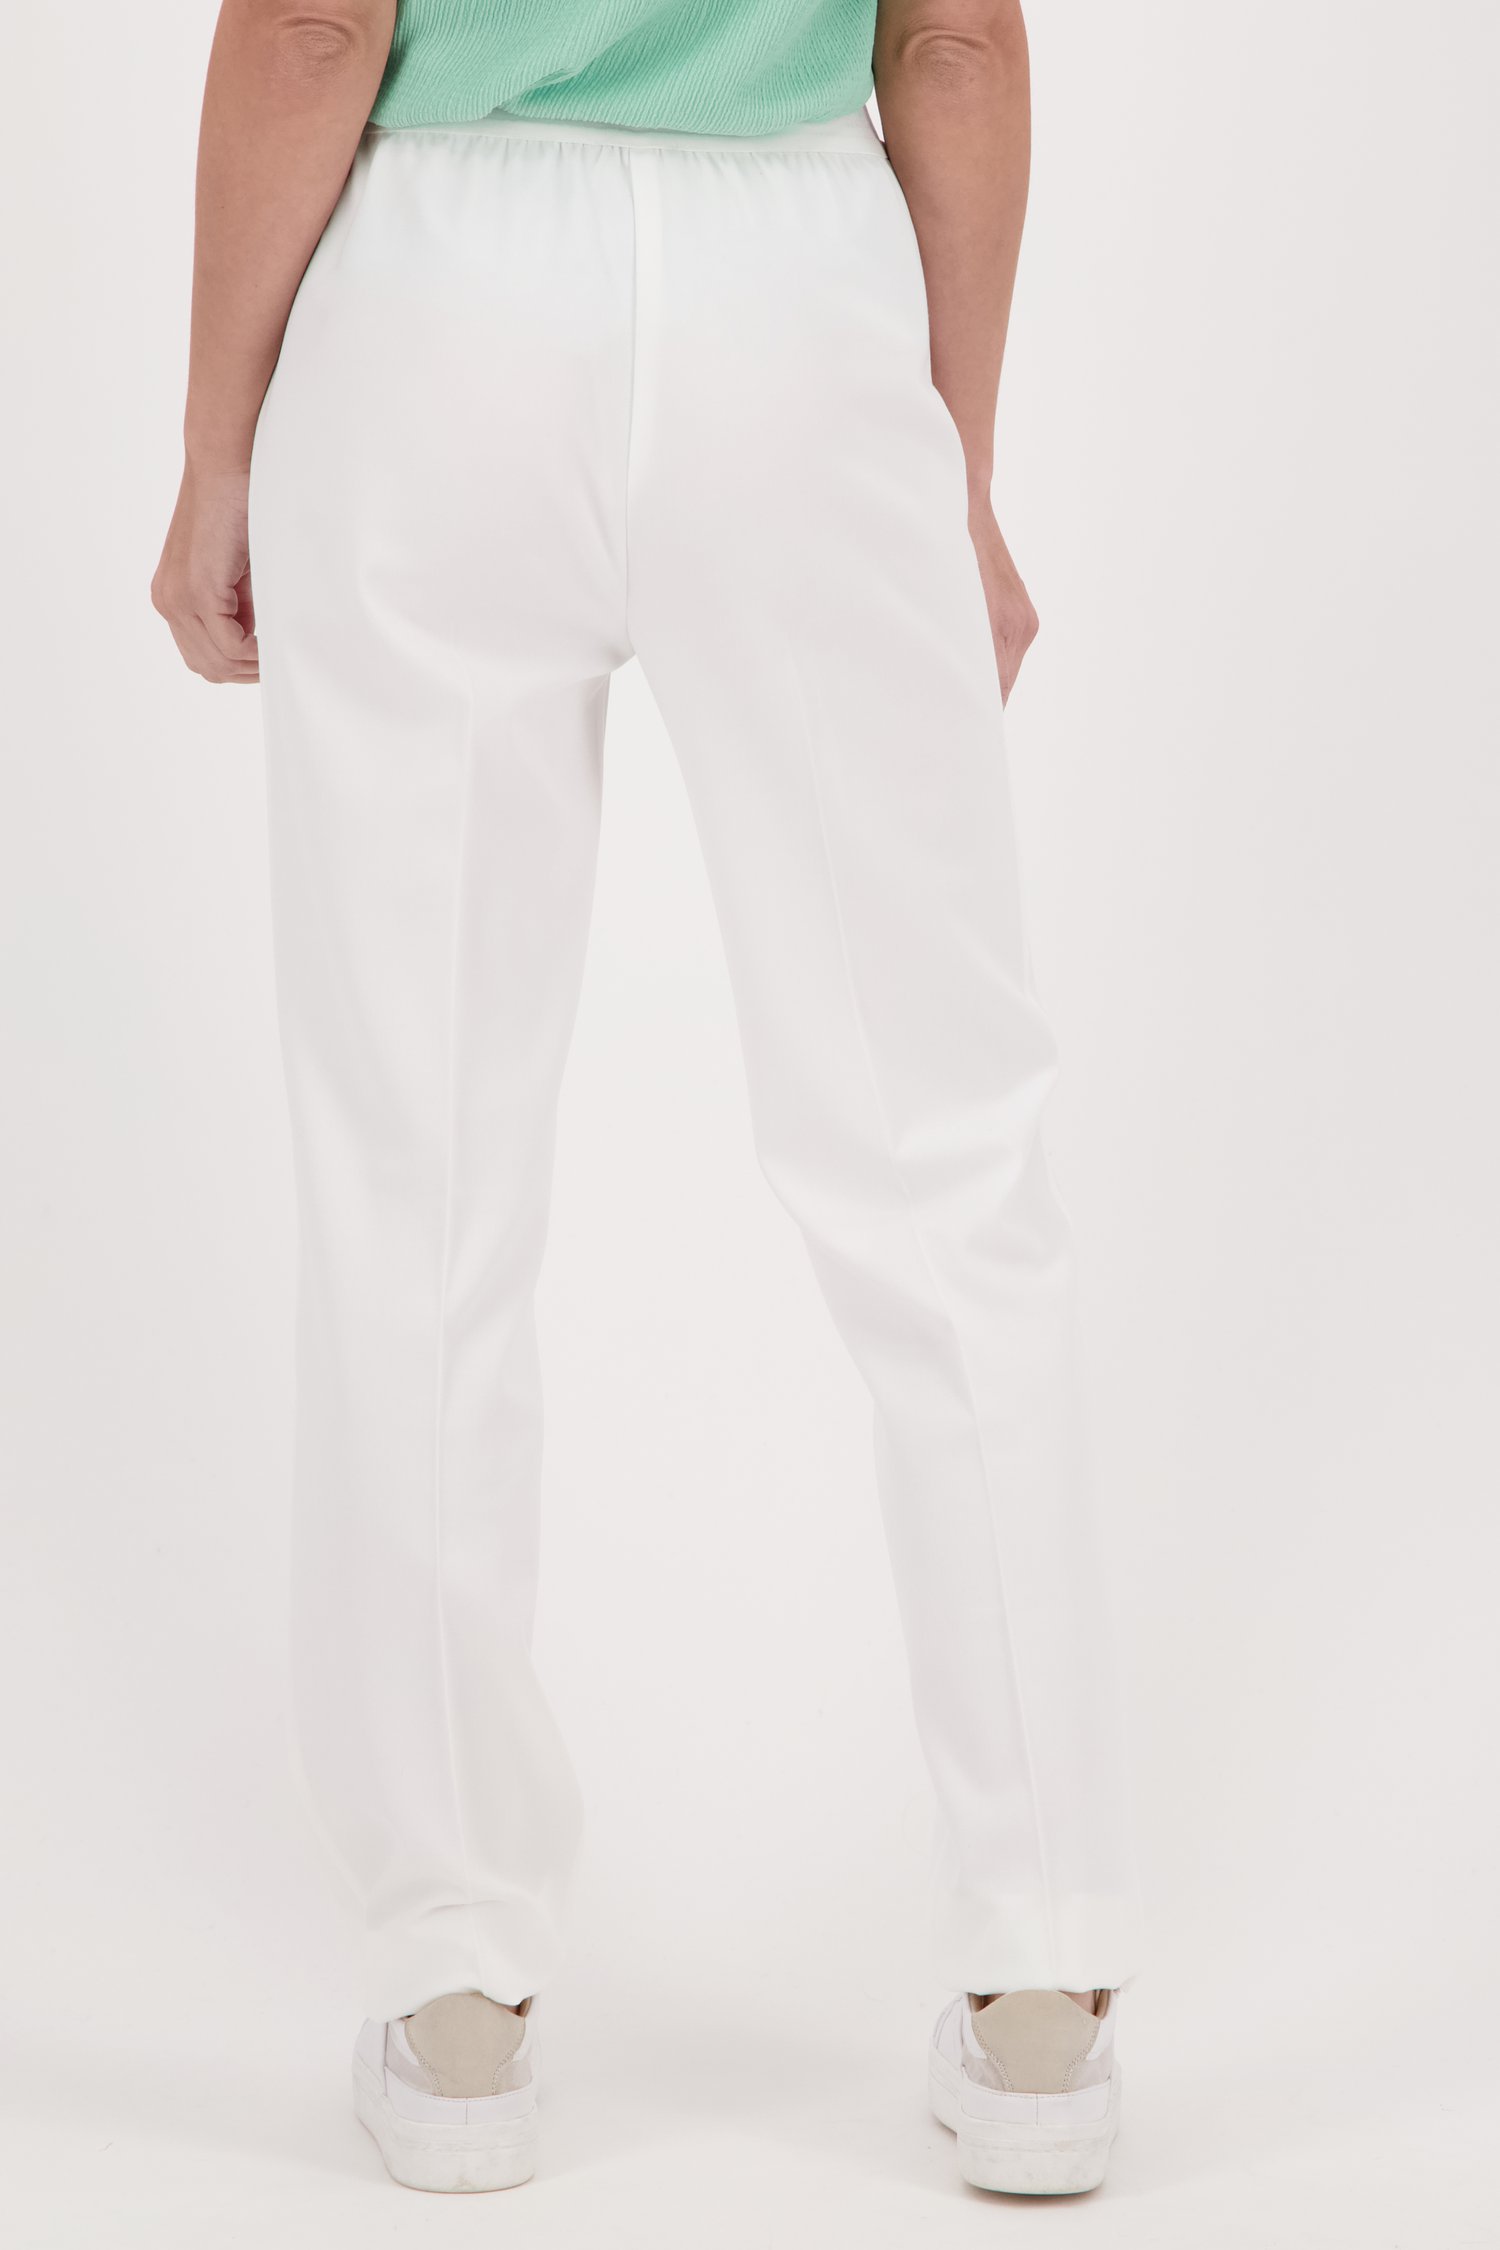 Ecru broek met elastische tailleband van Claude Arielle voor Dames